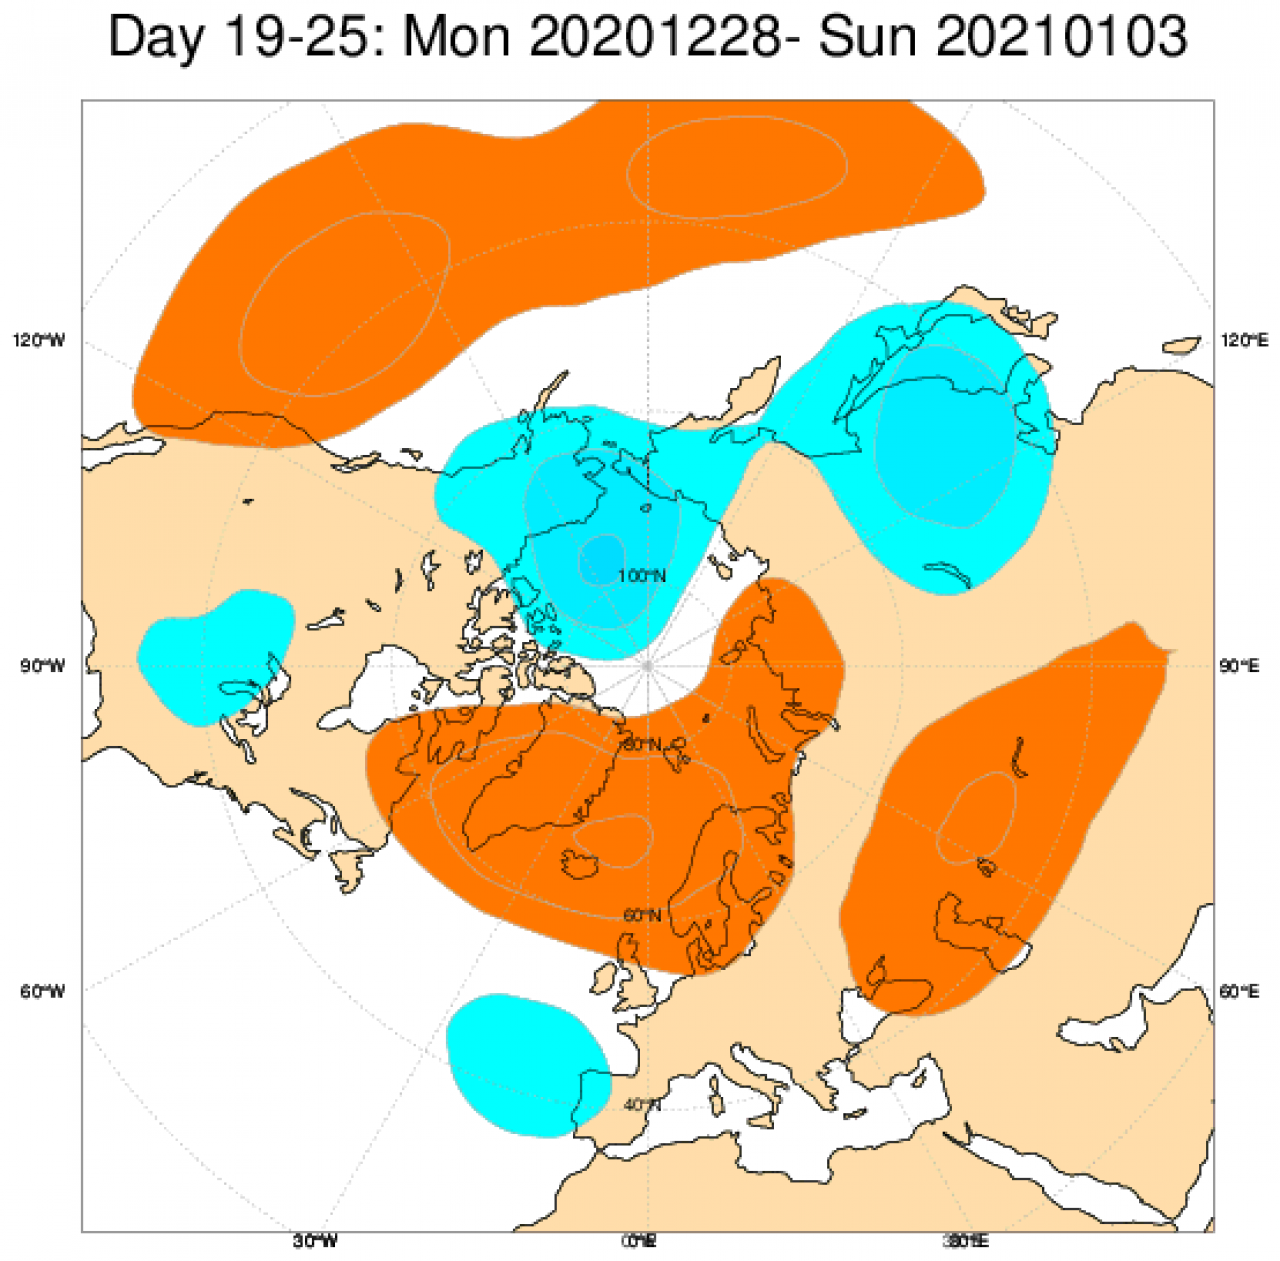 Le anomalie di pressione e geopotenziale in Europa secondo il modello ECMWF, mediate nel periodo 28 dicembre - 3 gennaio 